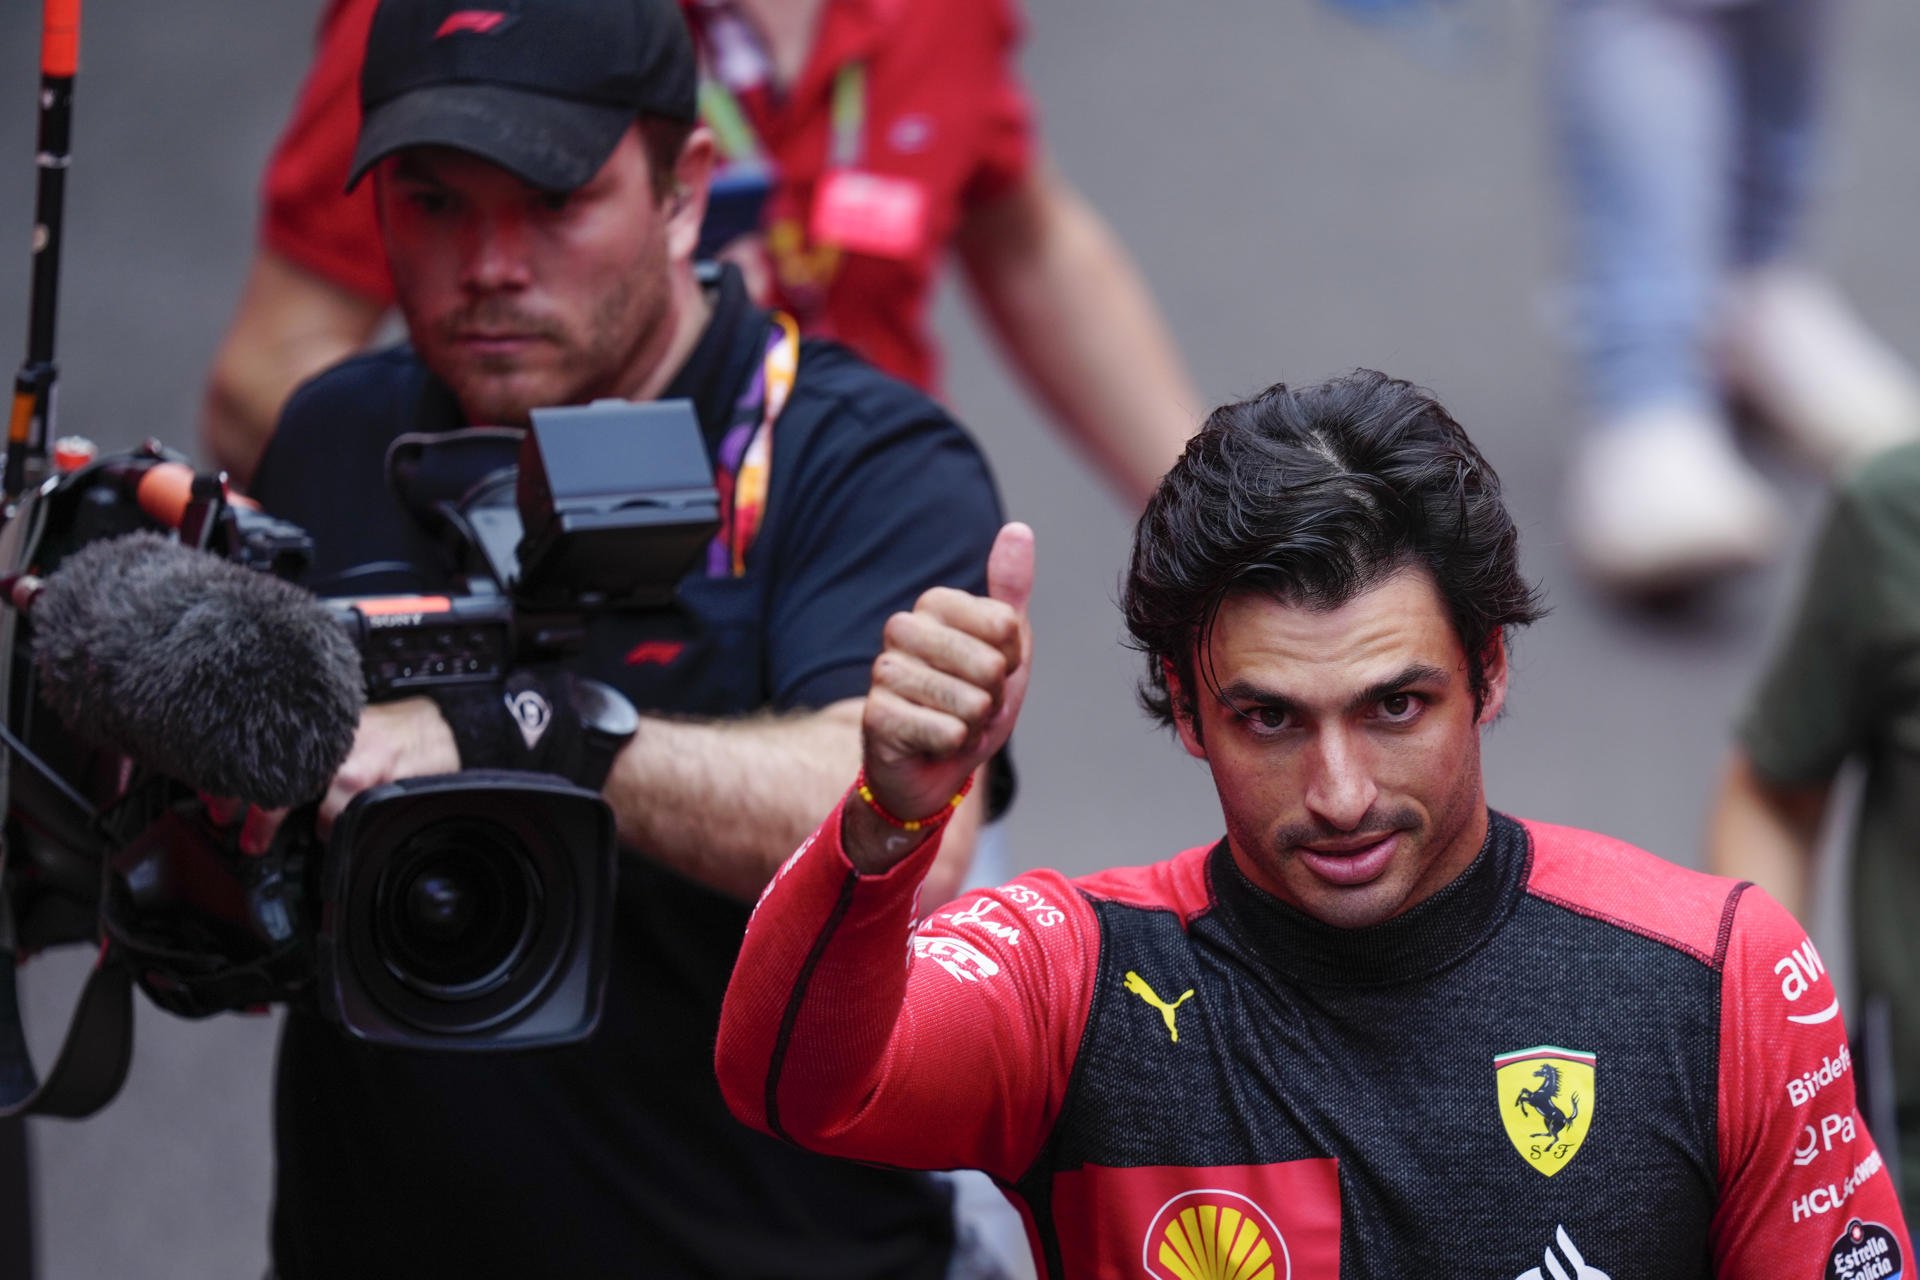 El sueldo de Carlos Sainz en Ferrari, el quinto piloto mejor pagado de la F1